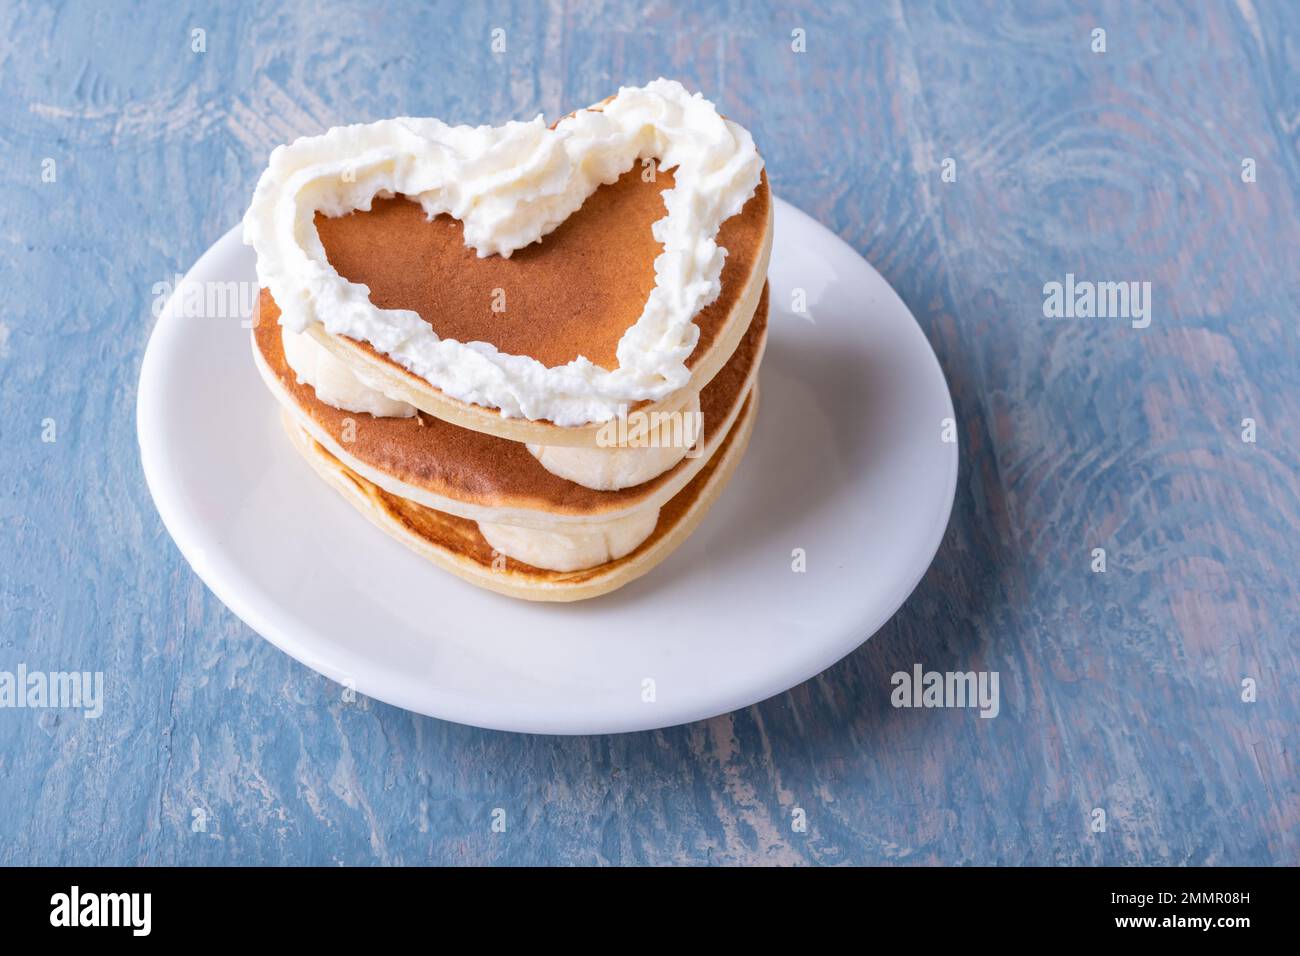 Kreatives Frühstück am Valentinstag. Hausgemachter herzförmiger Pfannkuchen mit Banane, dekoriert mit weißer Creme auf einem weißen Teller auf einem blauen Holztisch, Kopie Stockfoto